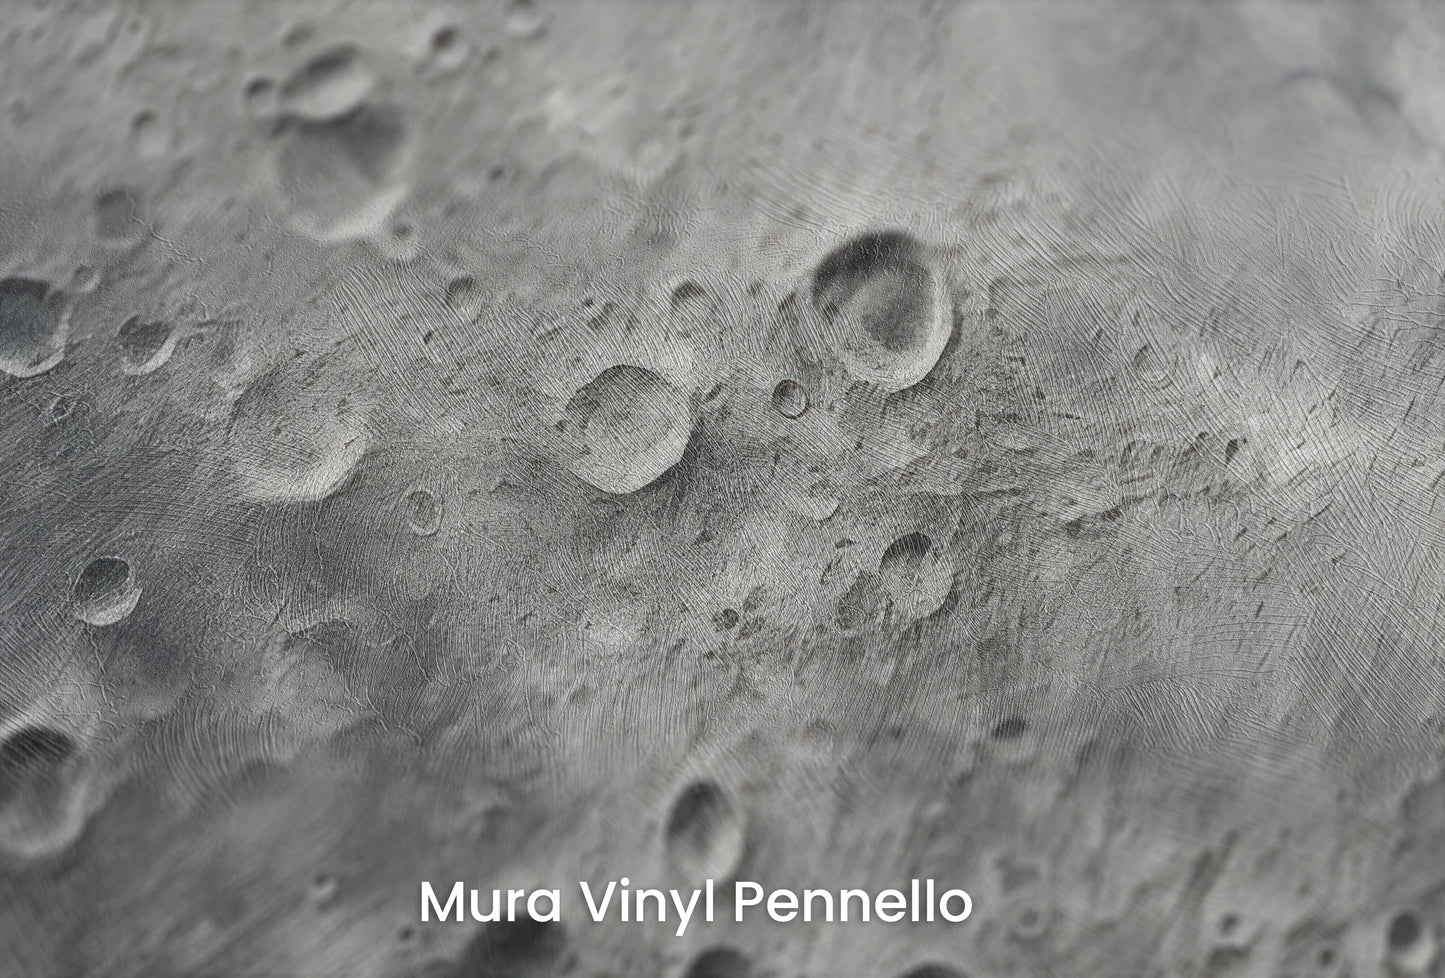 Zbliżenie na artystyczną fototapetę o nazwie Moon's Monochrome 2 na podłożu Mura Vinyl Pennello - faktura pociągnięć pędzla malarskiego.